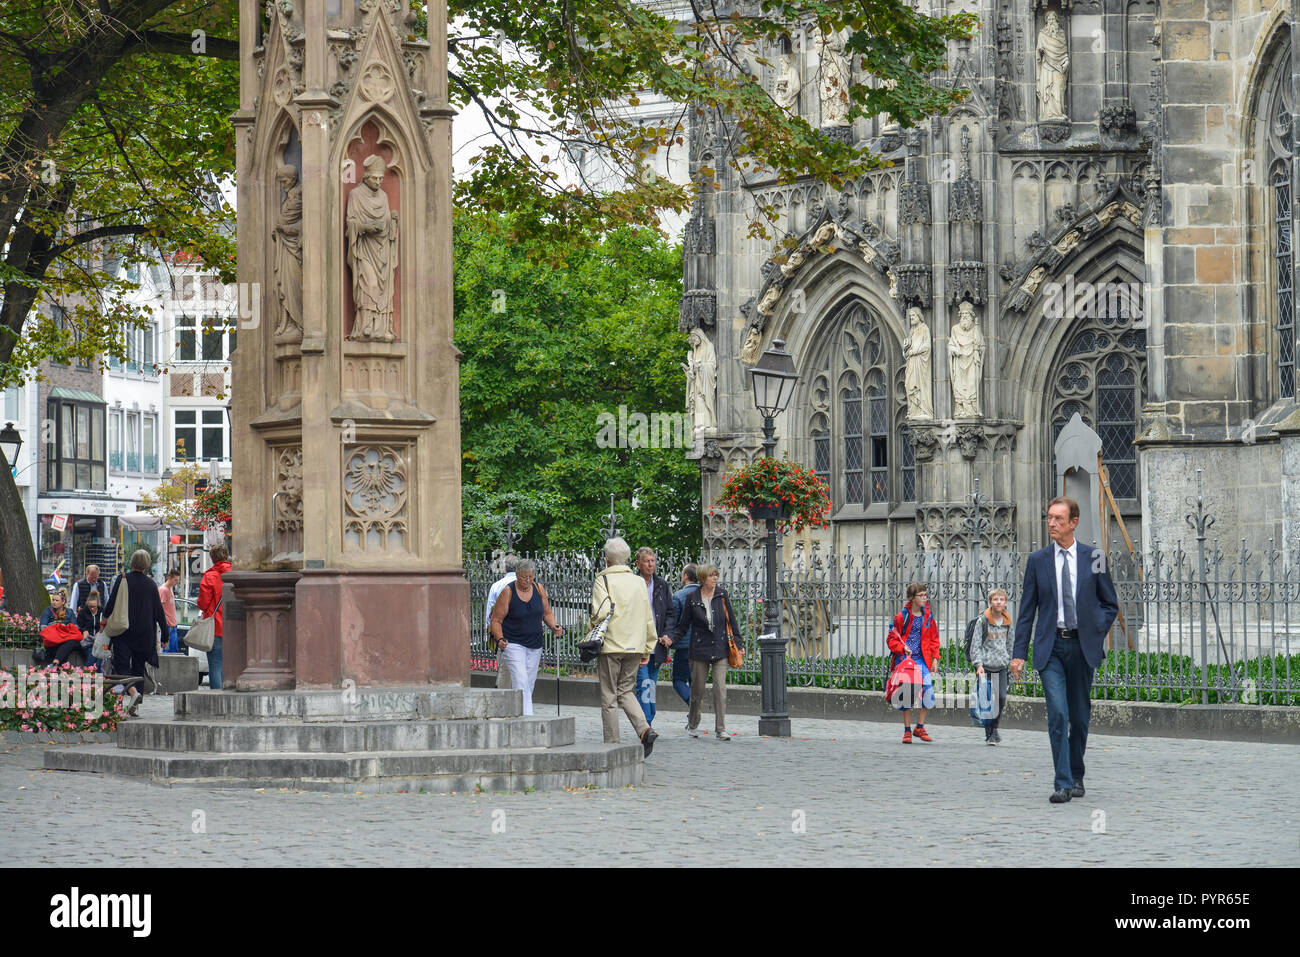 Street scene, cathedral place, Old Town, Aachen, North Rhine-Westphalia, Germany, Strassenszene, Muensterplatz, Altstadt, Nordrhein-Westfalen, Deutsch Stock Photo